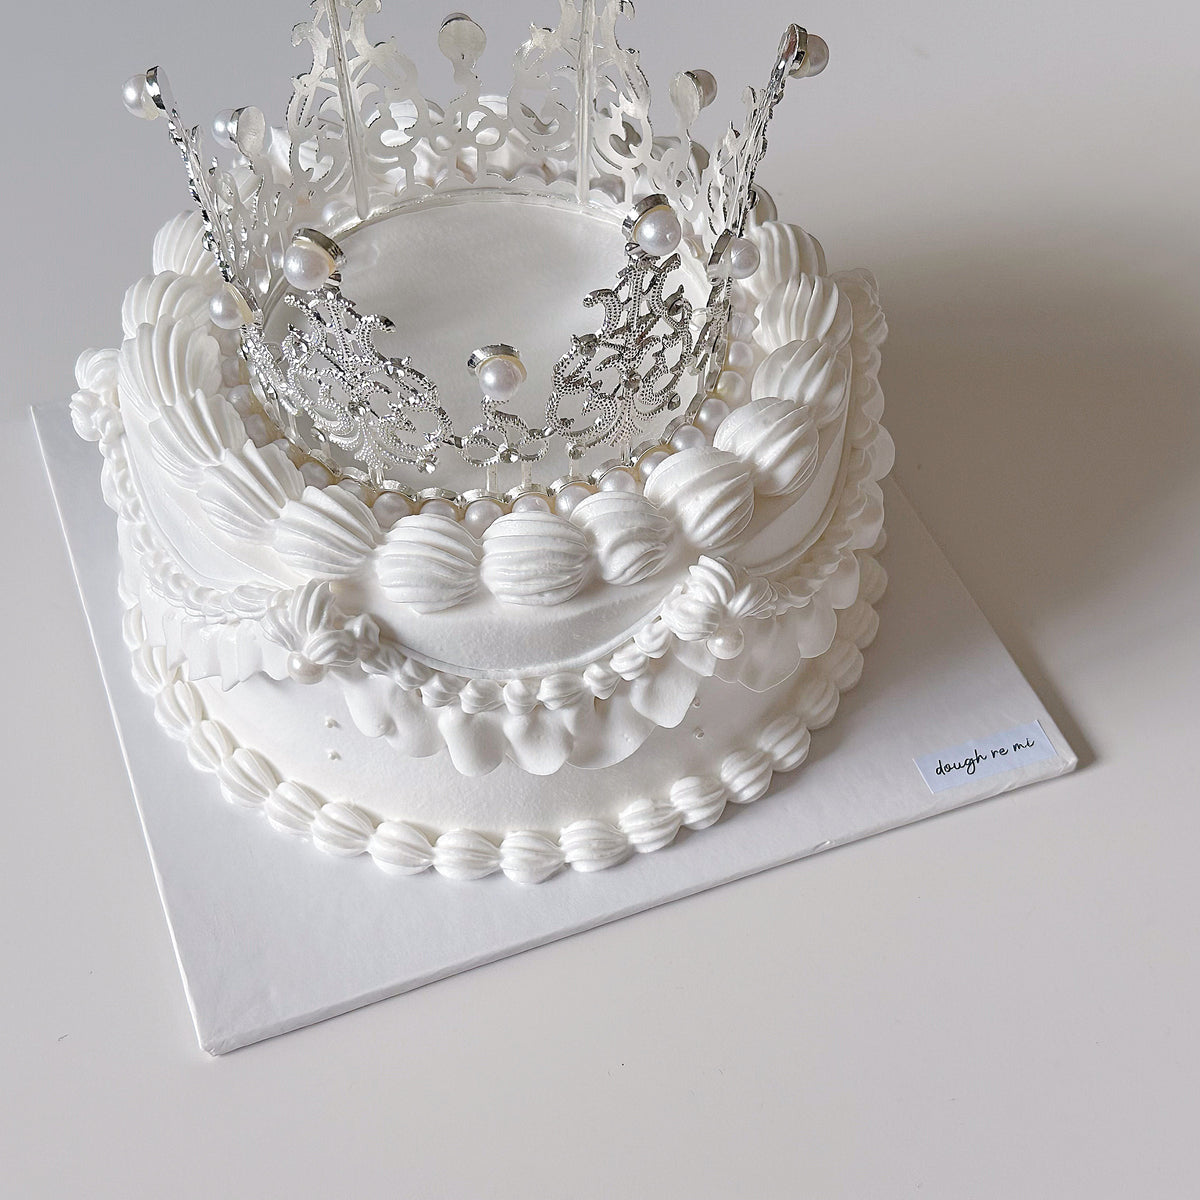 Princess Crown Cake | bakehoney.com